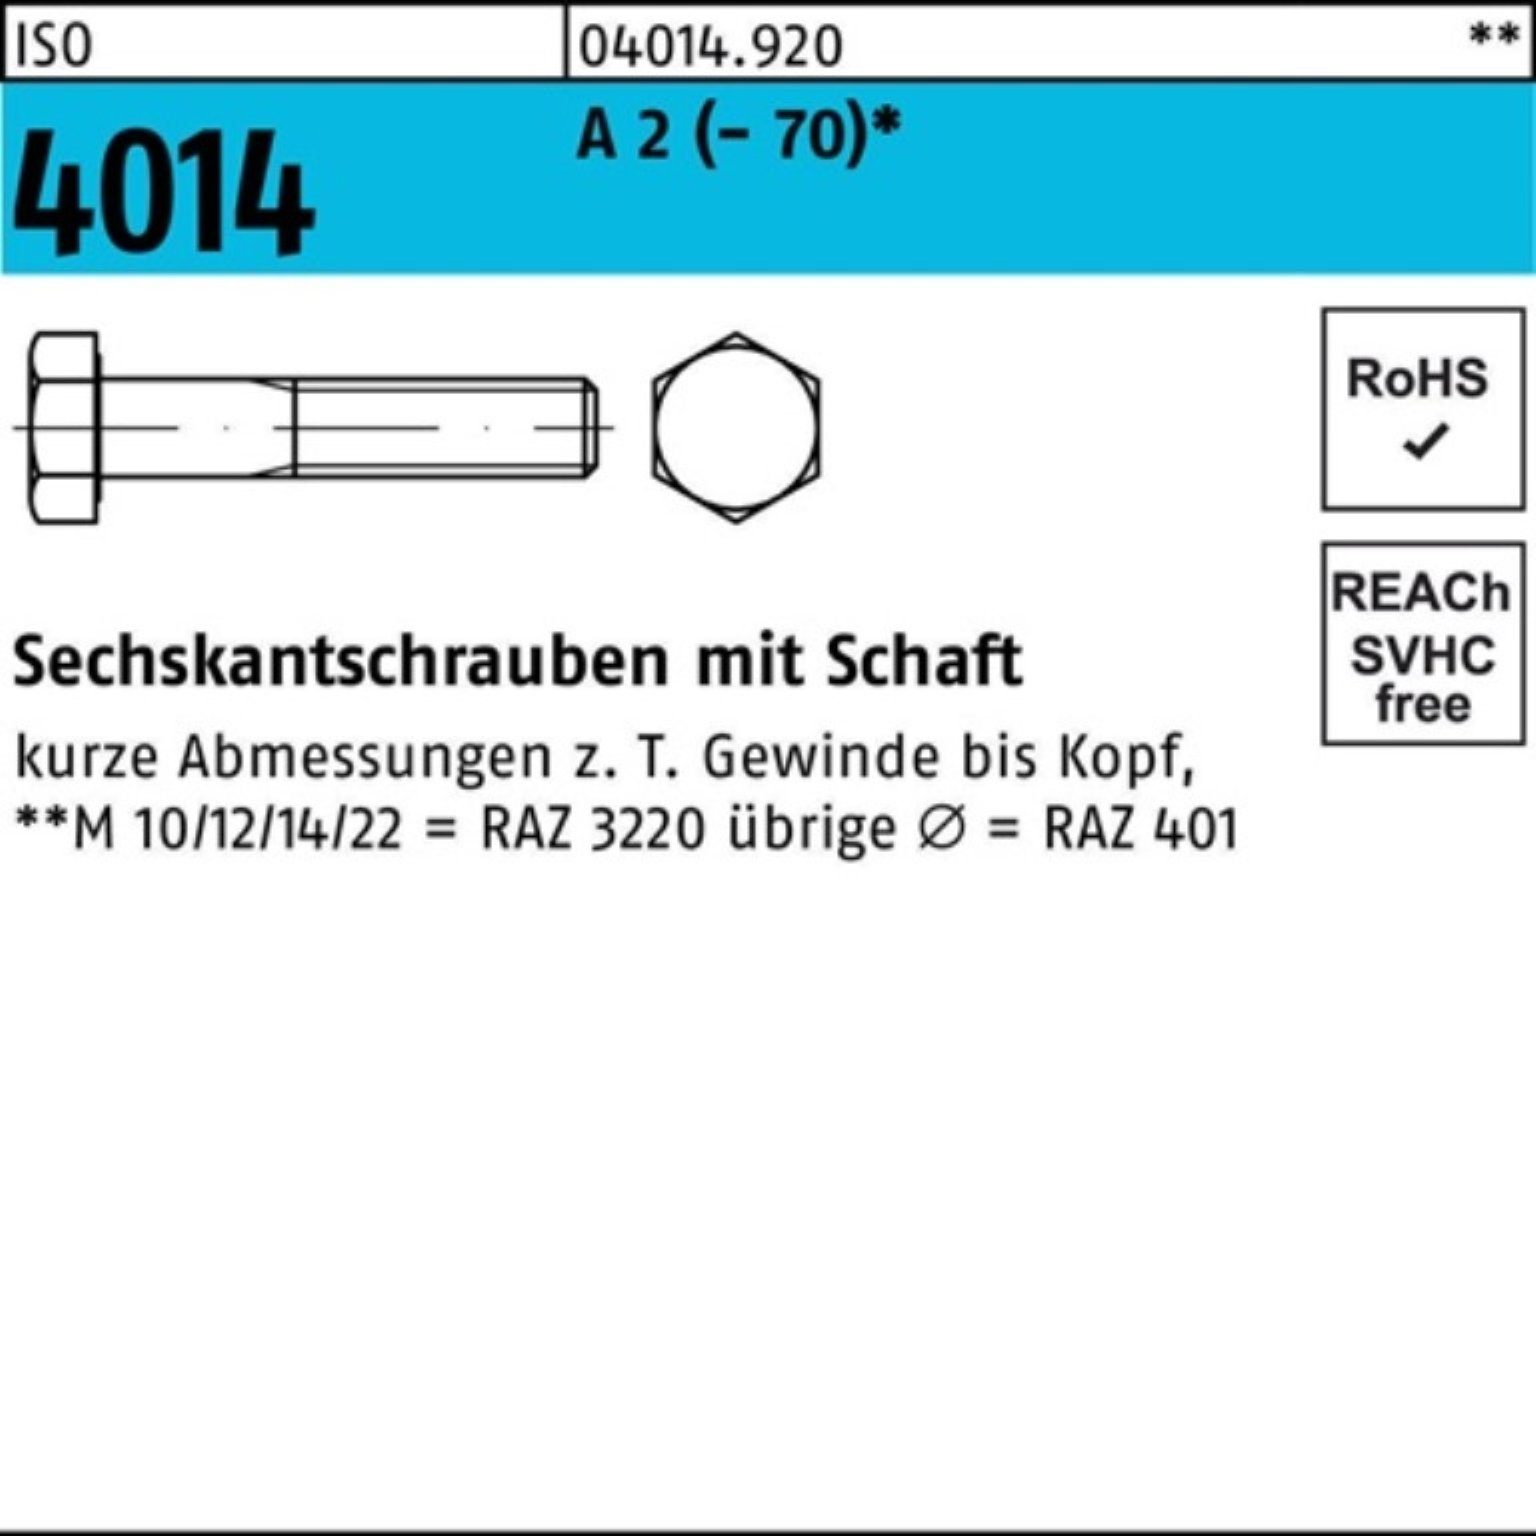 Bufab Sechskantschraube 100er Pack Sechskantschraube ISO 4014 Schaft M10x 75 A 2 (70) 50 St